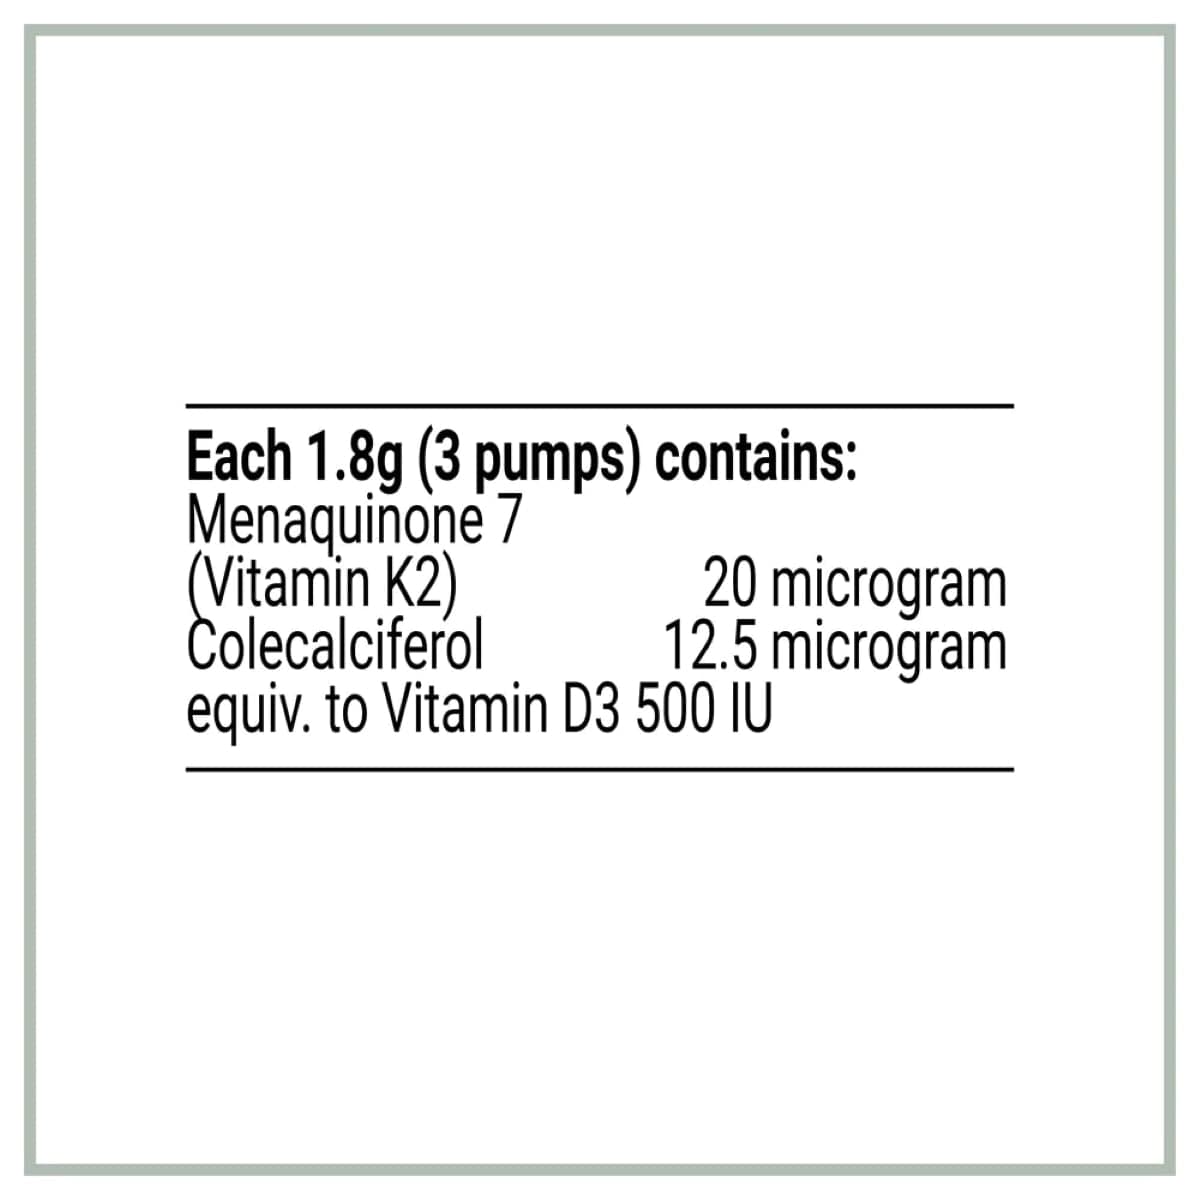 Melrose Liposomal Vitamin D3-K2 50ml